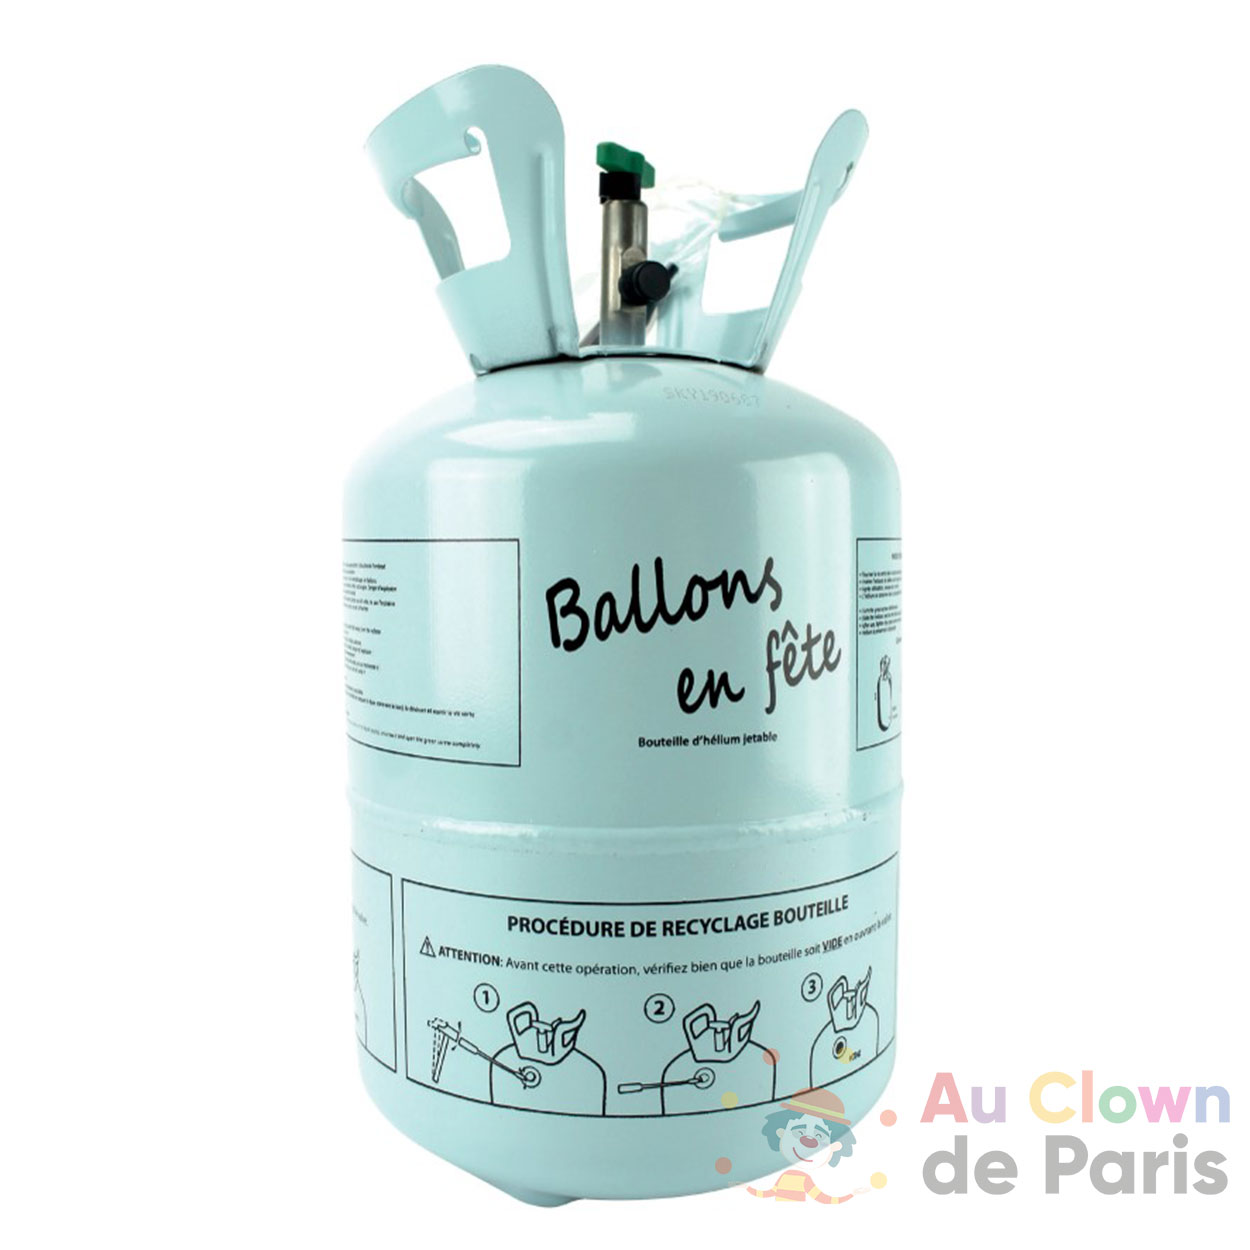 Bouteille Hélium : 1 à 50 Ballons au Meilleur Prix